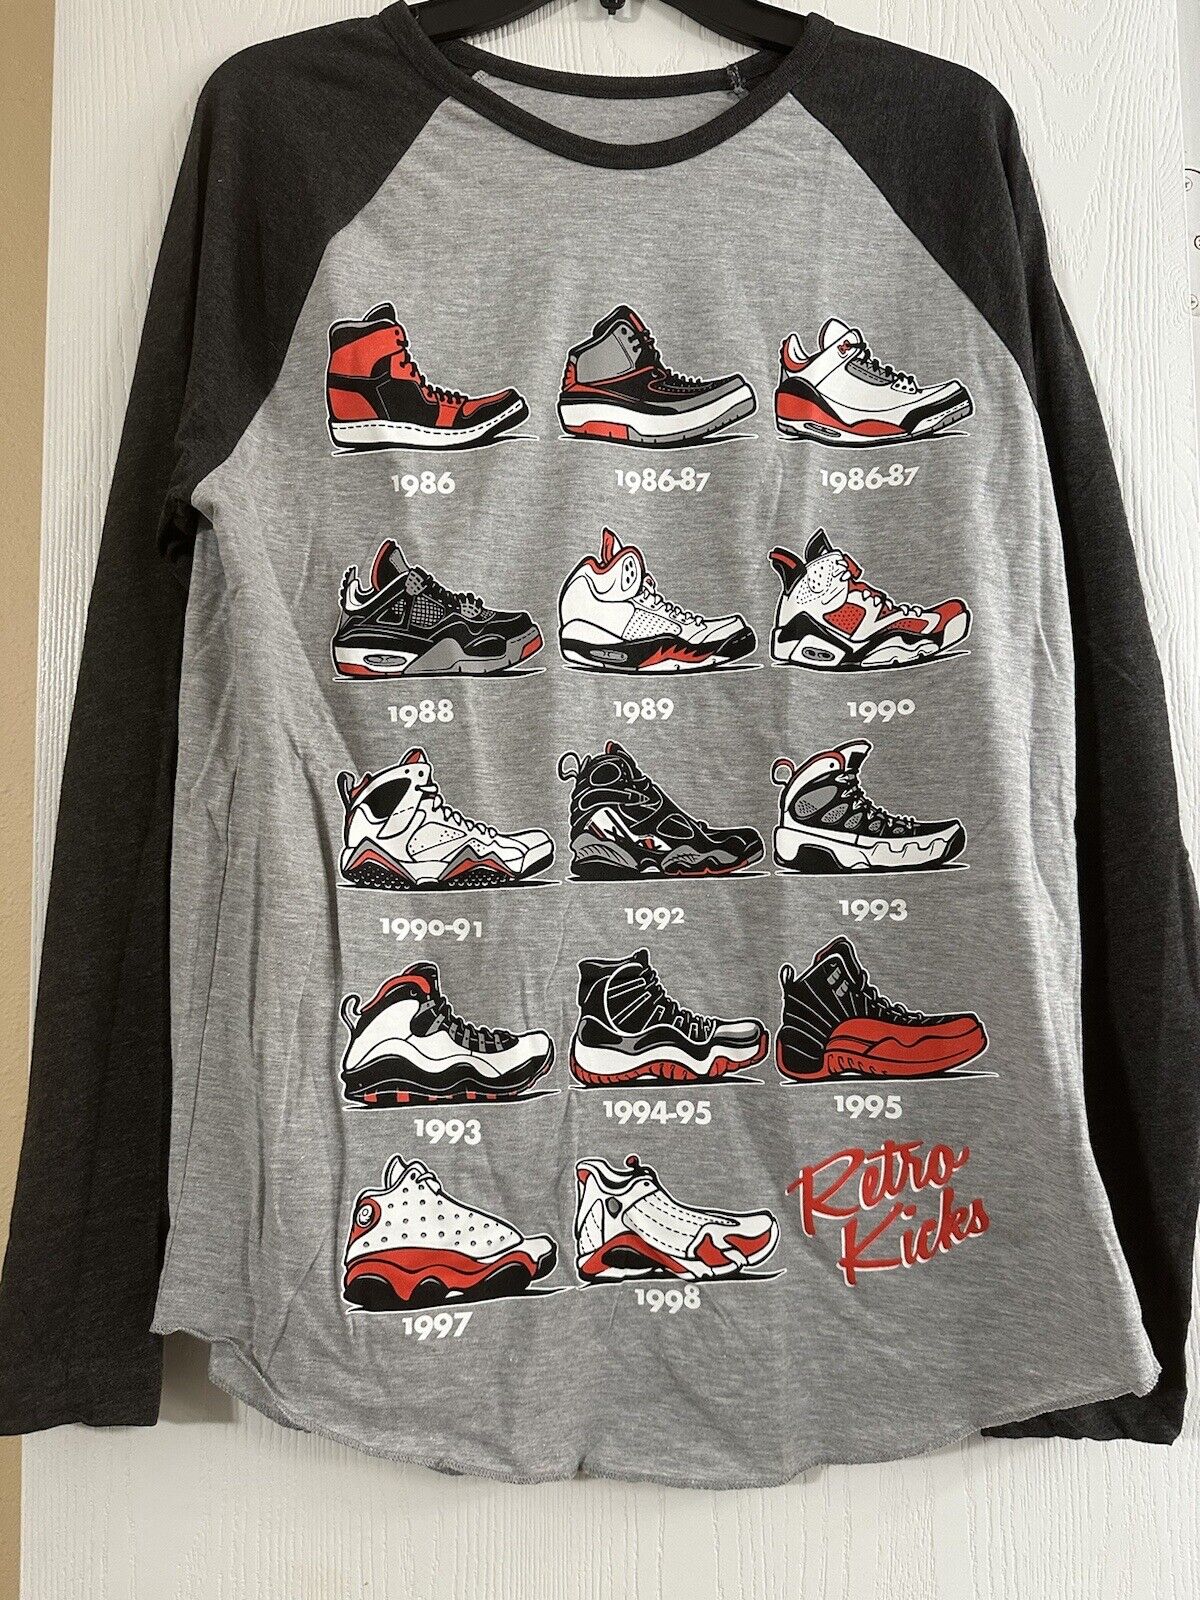 Smart Retro Kicks Men’s Evolution of Sneaker Shoes Graphic Long Sleeve Tee T-Shirt Med on eBay